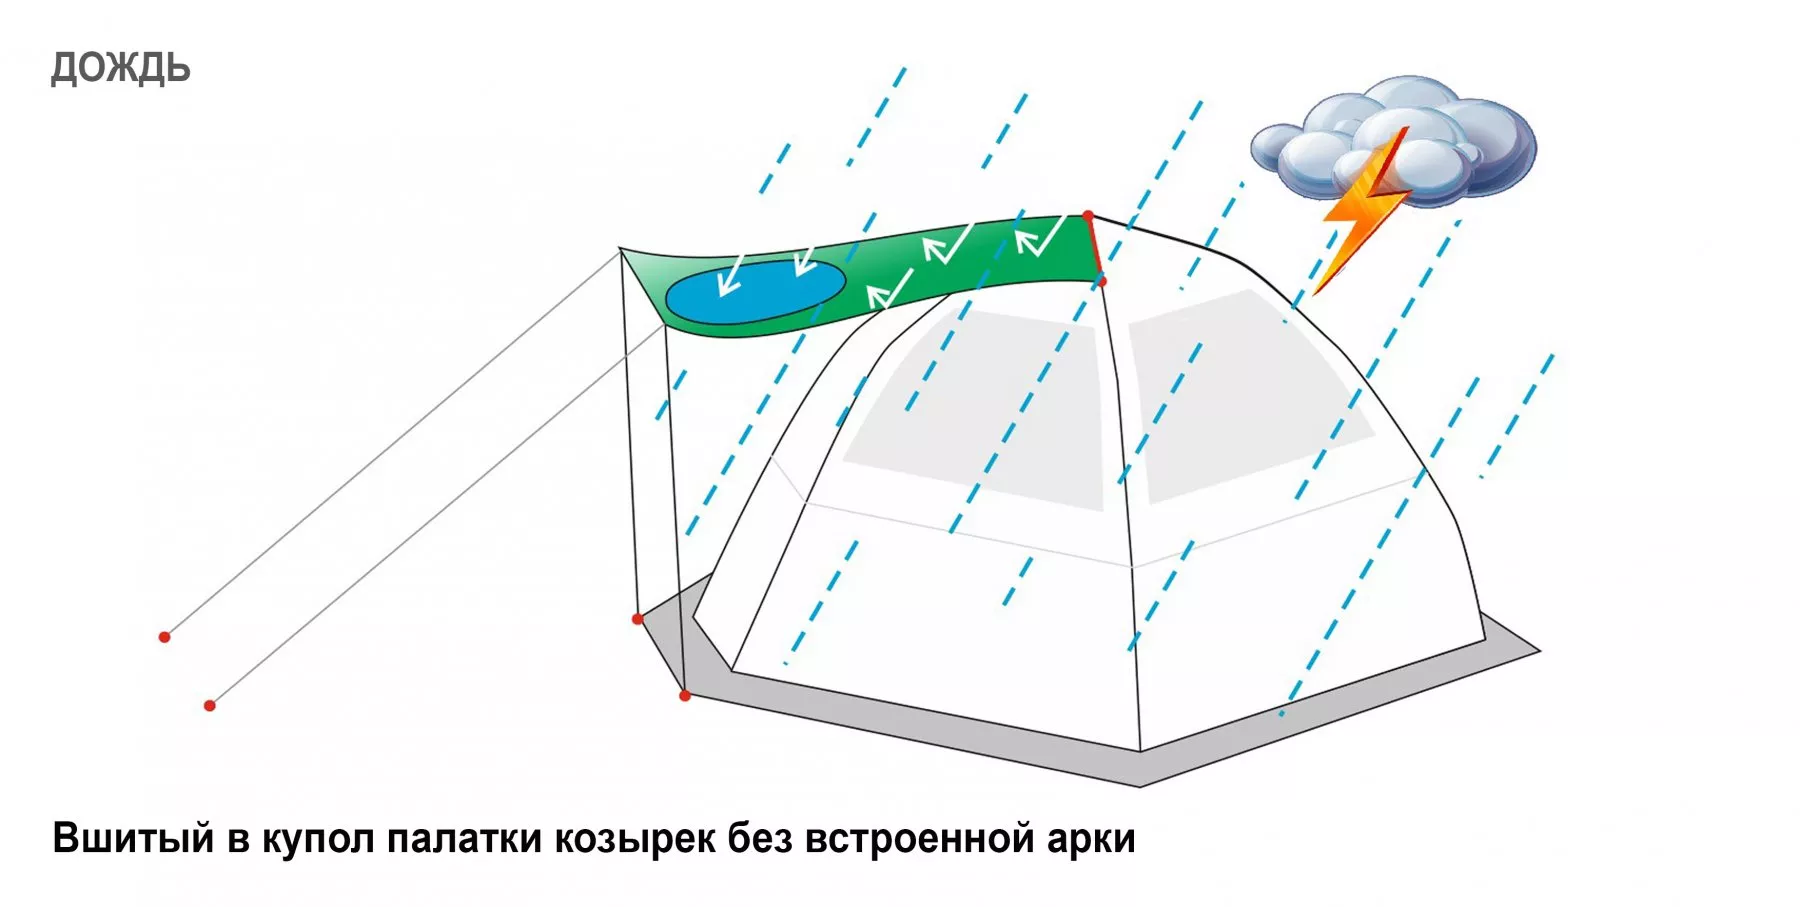 Вшитый в купол палатки Козырек (дождь)